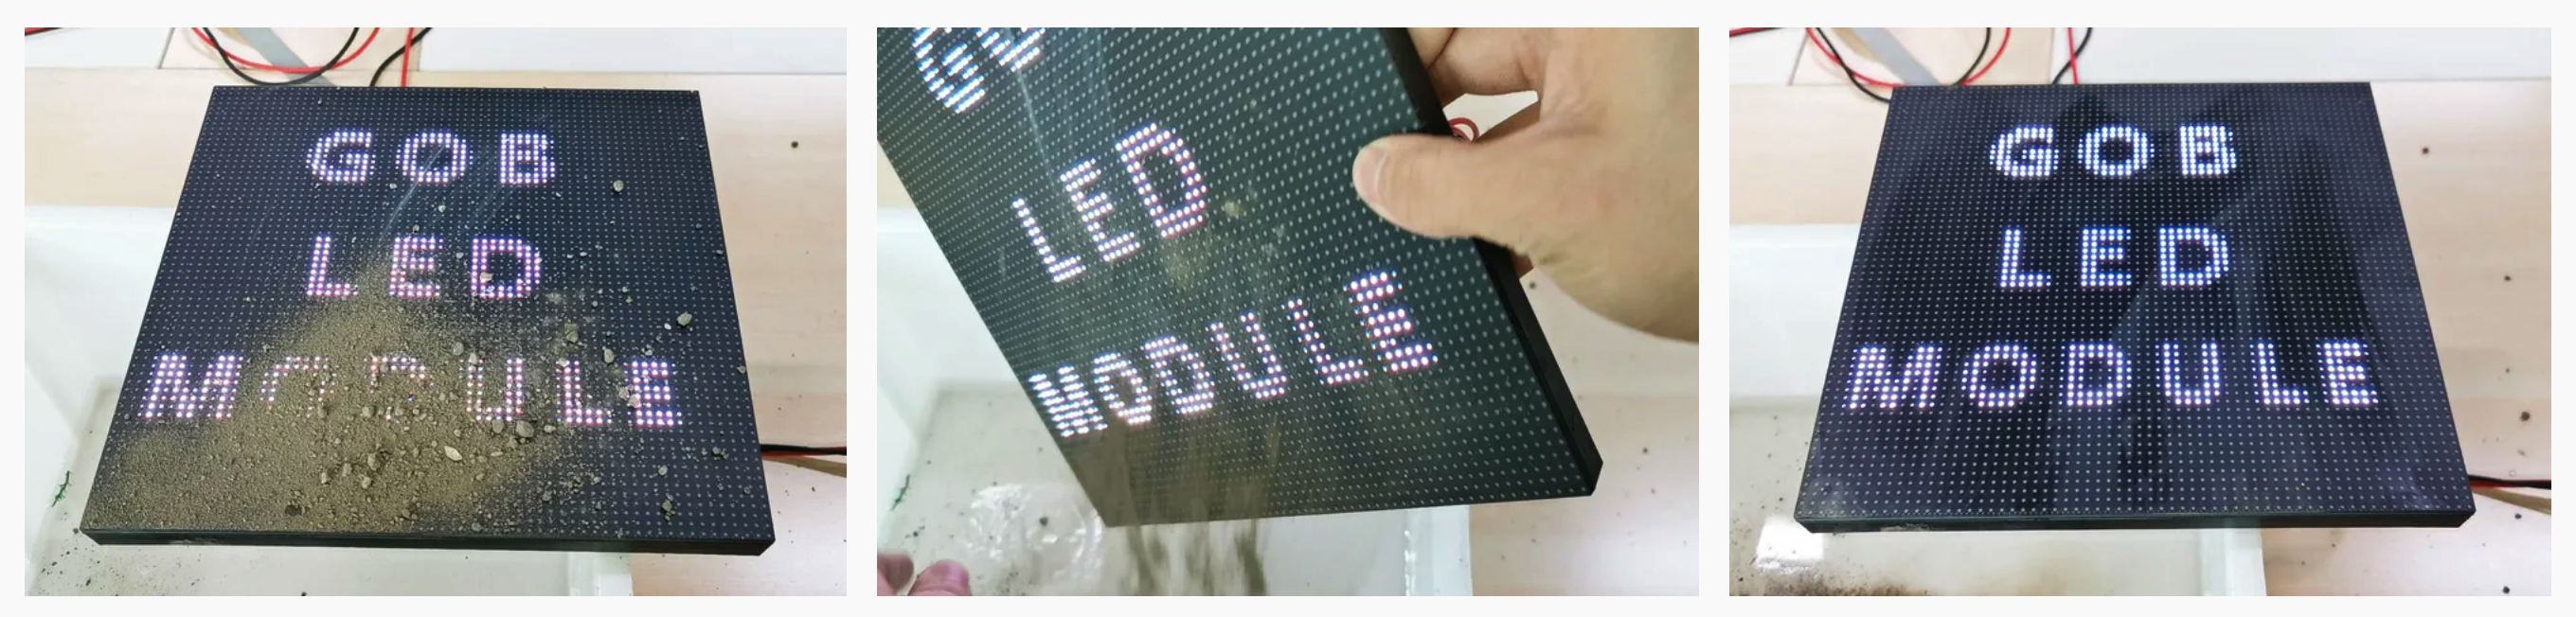 Màn hình LED LED độ ẩm chống bụi